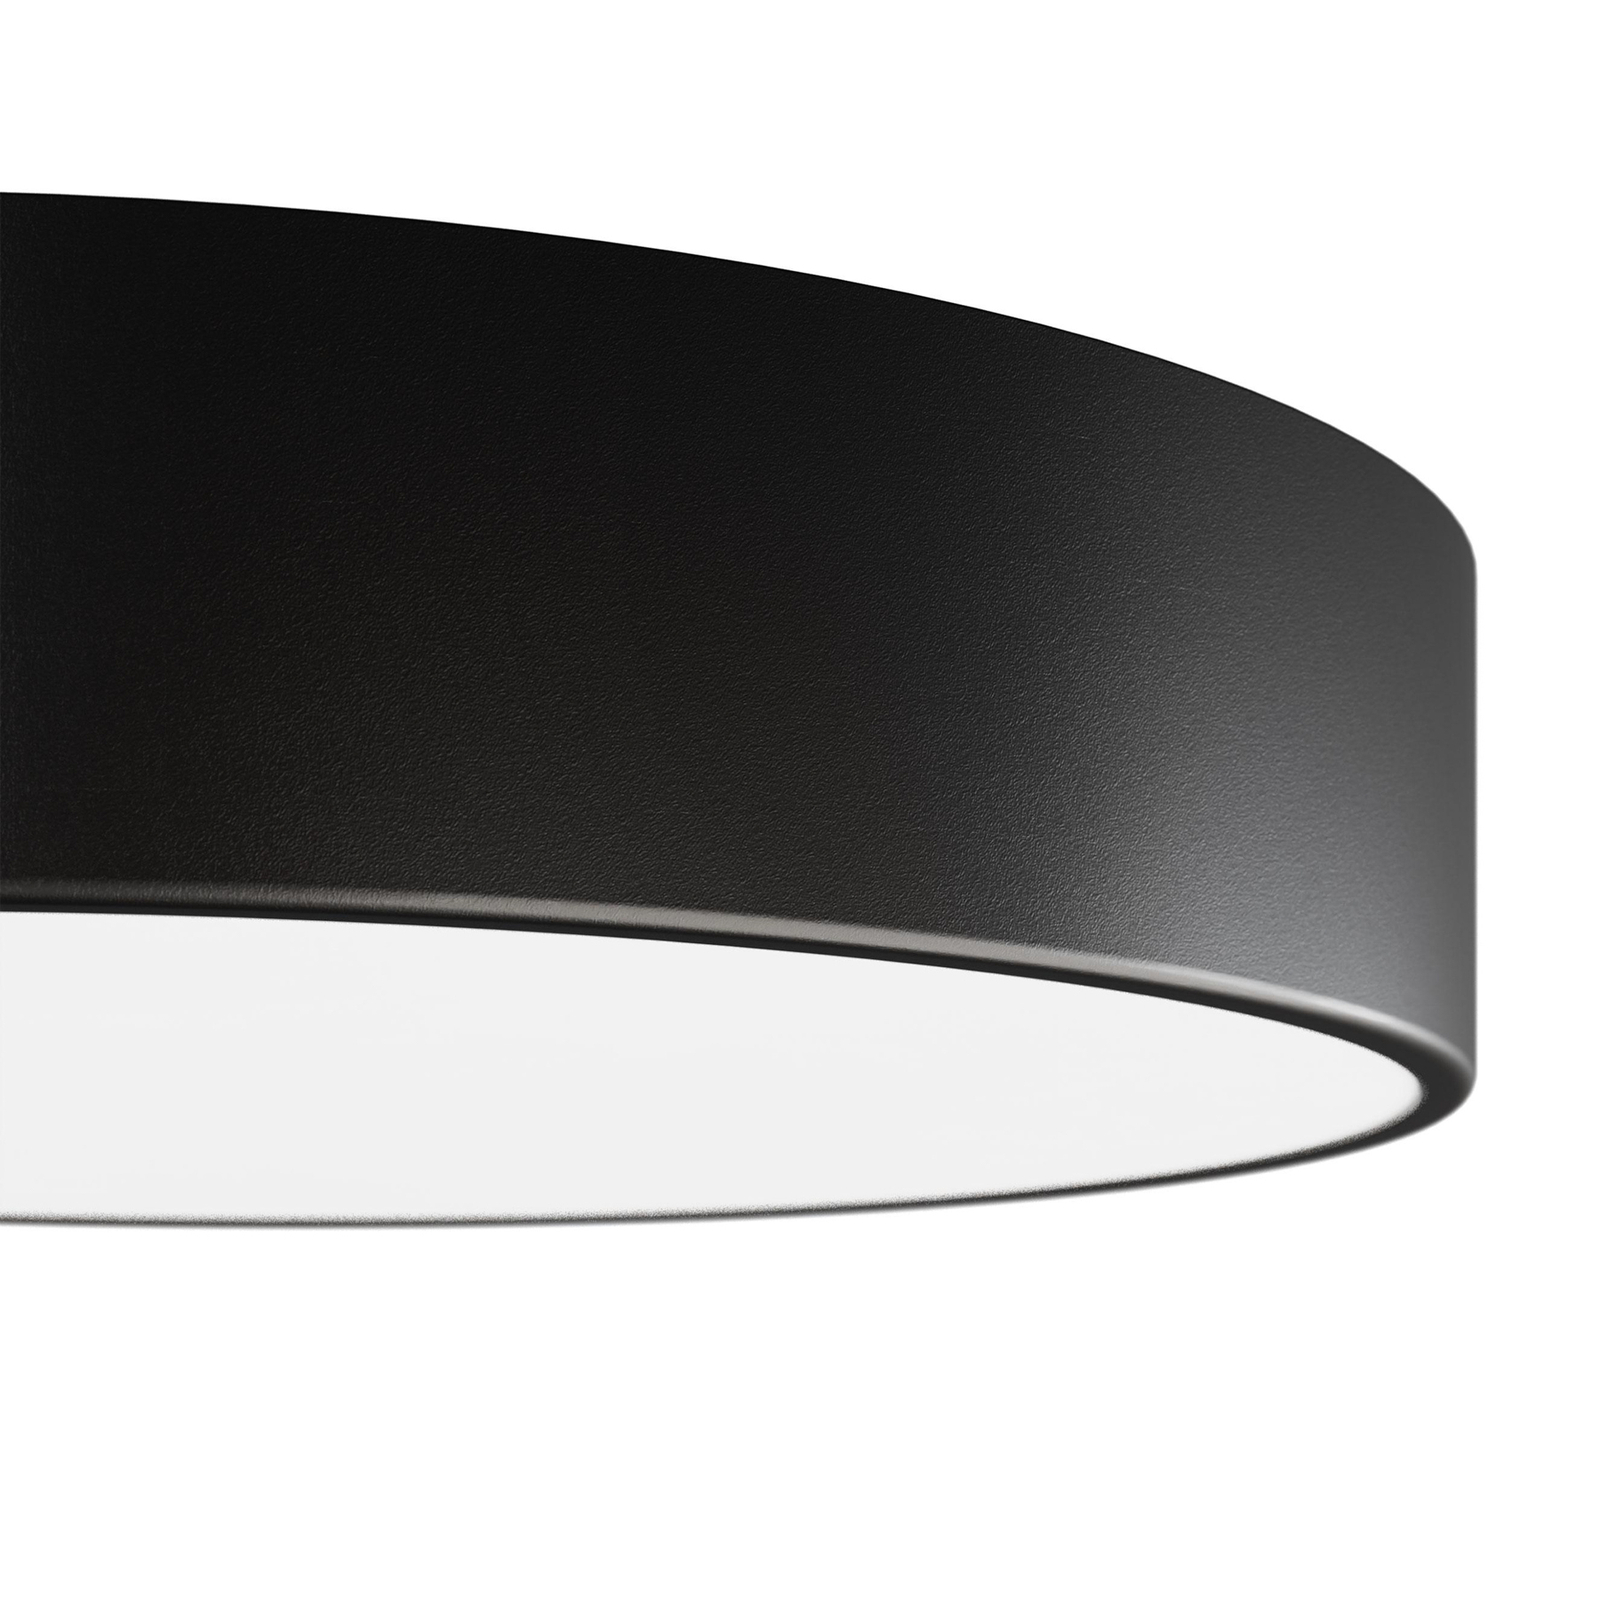 Cleo plafondlamp, zwart, Ø 20 cm, metaal, IP54